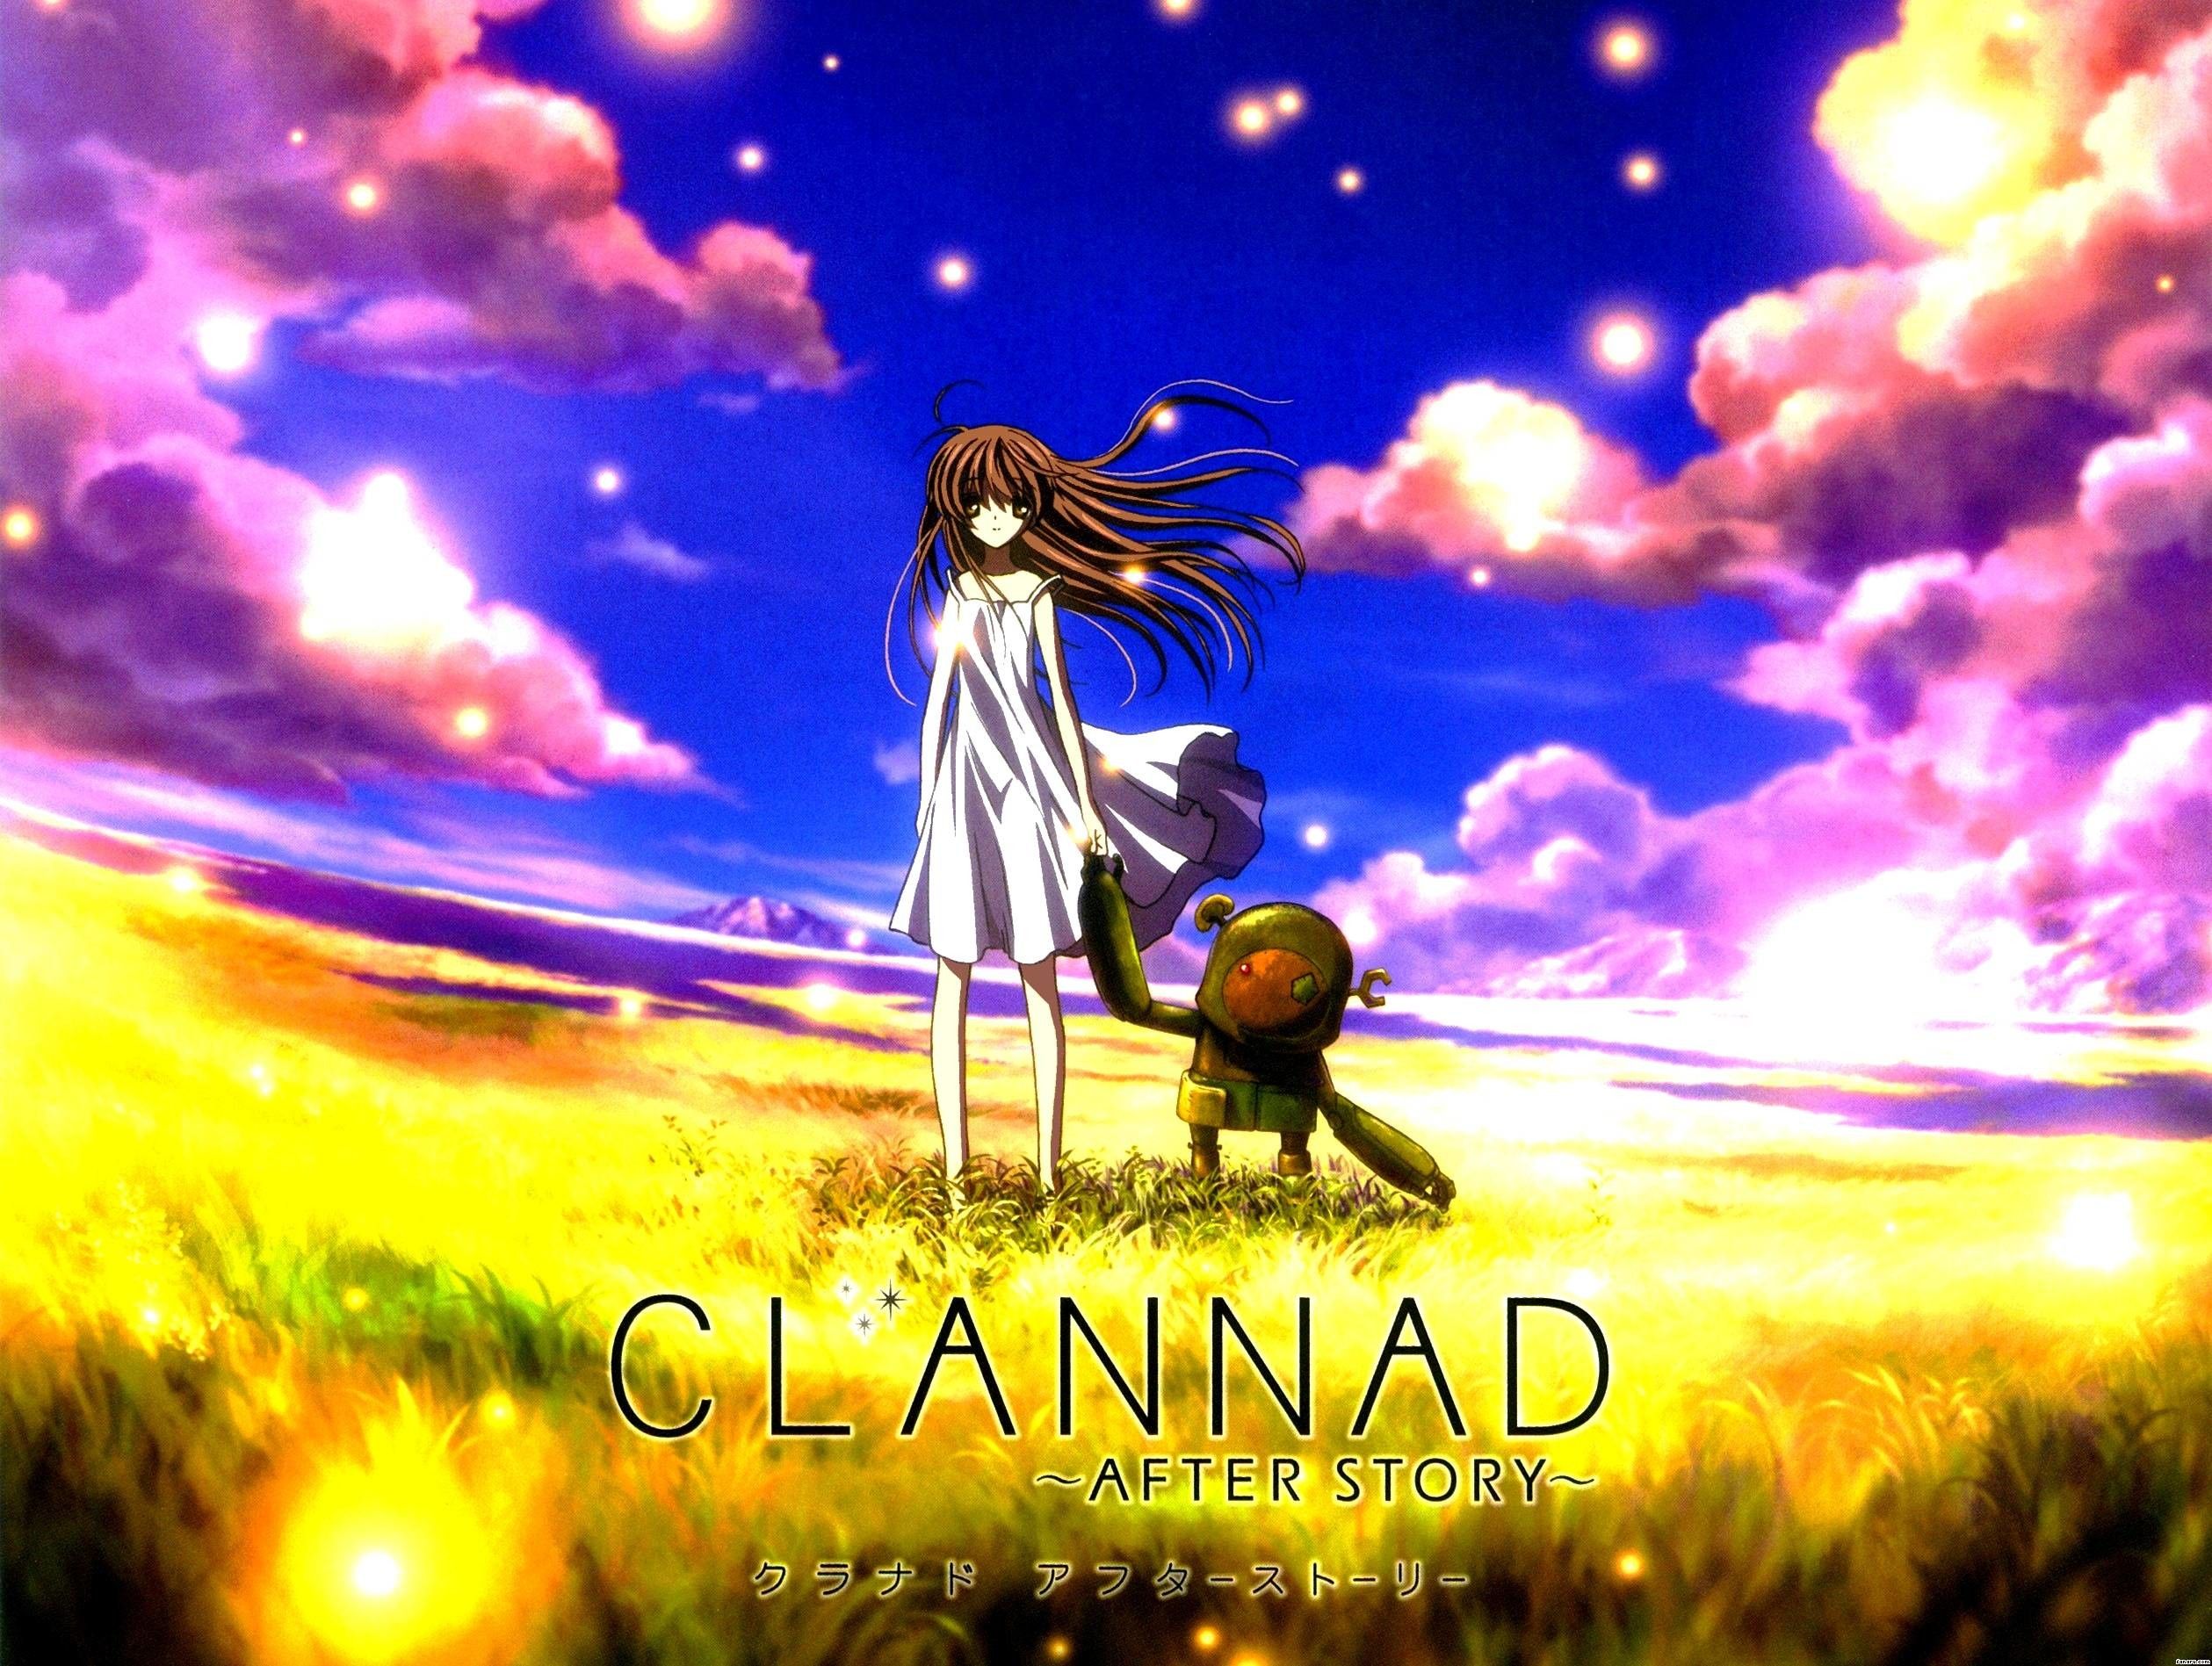 Clannad digital wallpaper Clannad Nagisa Furukawa street 1080P wallpaper  hdwallpaper desktop  Anime scenery Clannad Digital wallpaper